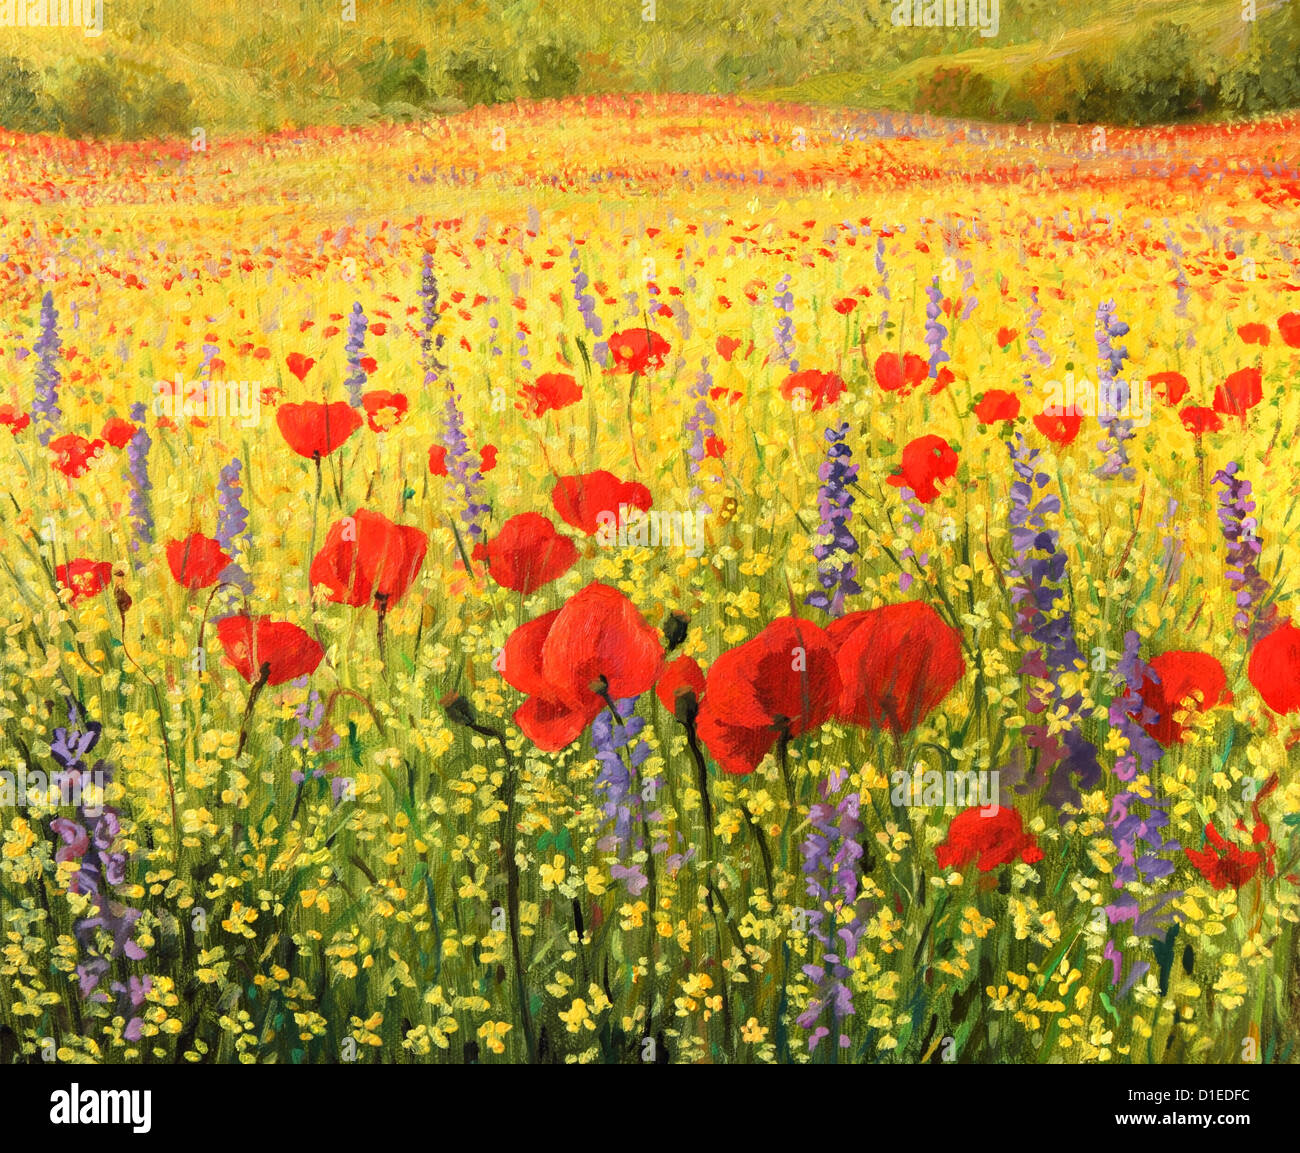 Un dipinto ad olio su tela di un colorato paesaggio rurale con un campo pieno di papaveri rossi, di colza gialli e blu delphiniums. Foto Stock